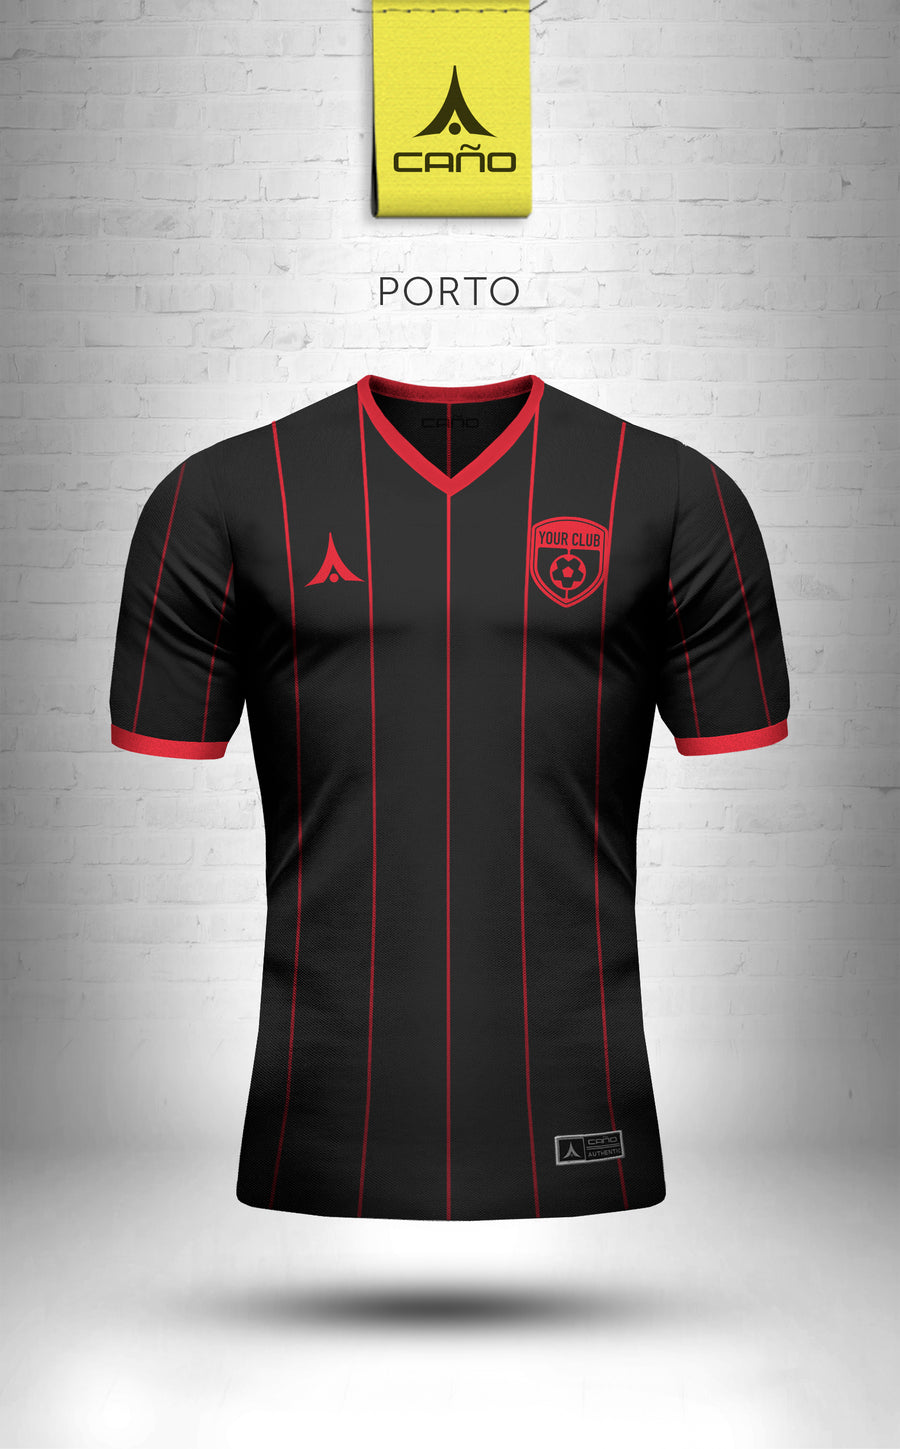 Porto in black/red